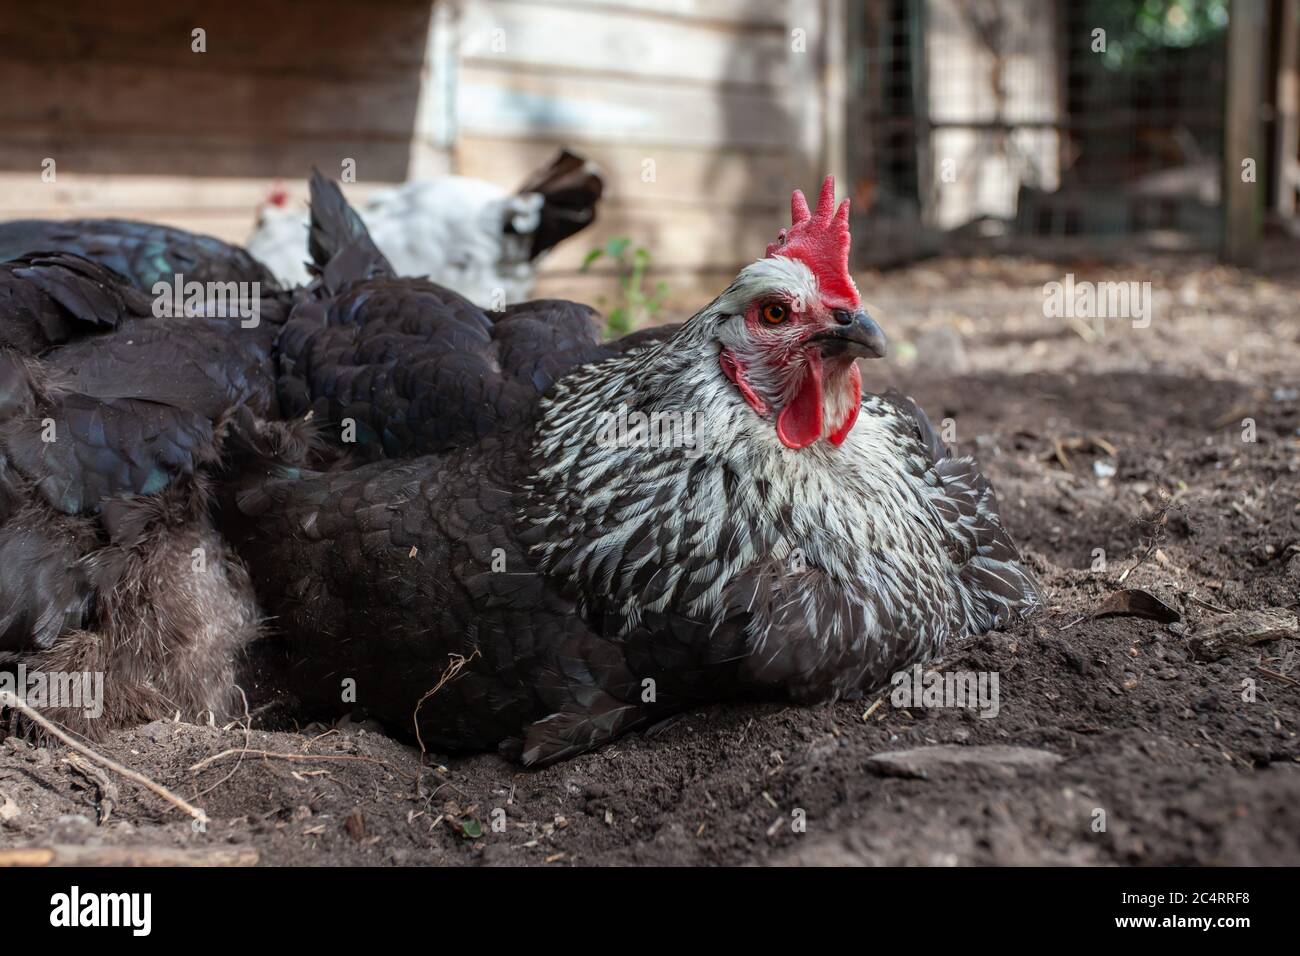 Gemischte Herde von Hühnern Staub Baden im Garten. Britische Inseln Stockfoto